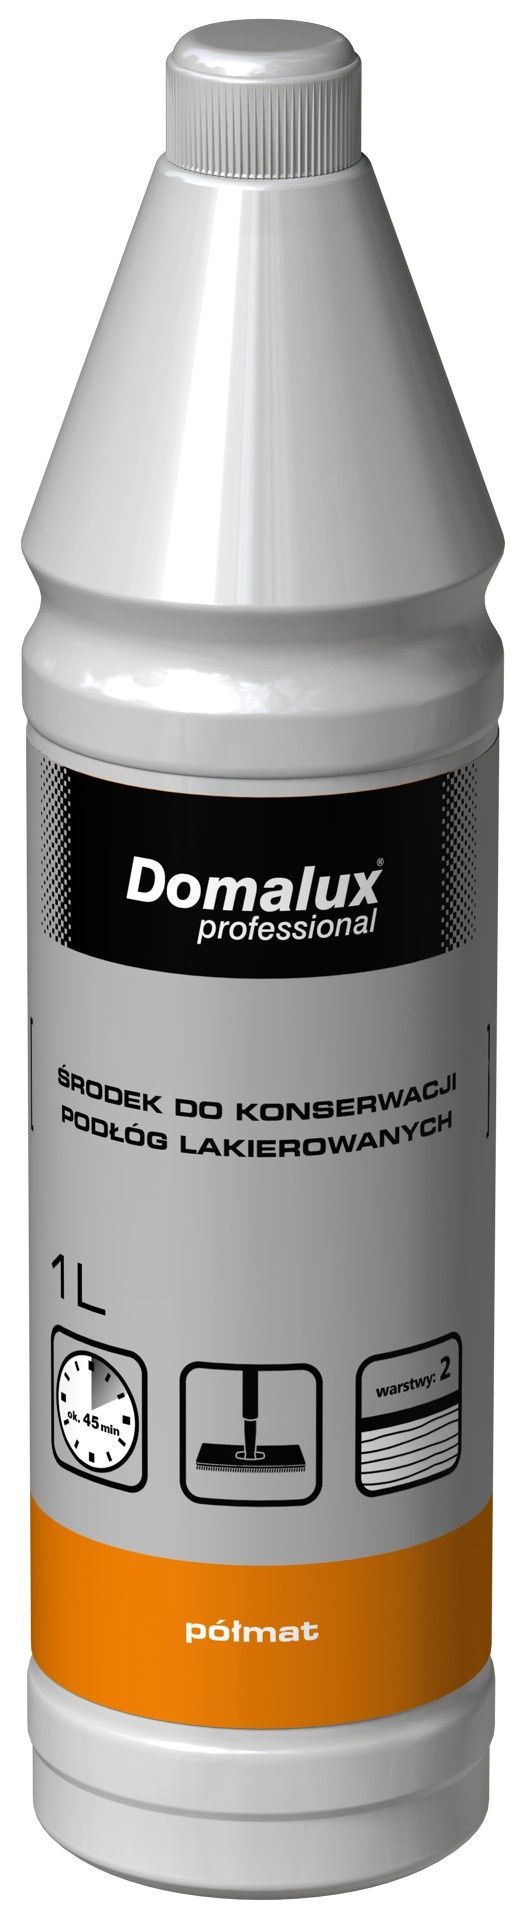 Domalux: Zmiana połysku podłogi dzięki środkom do konserwacji